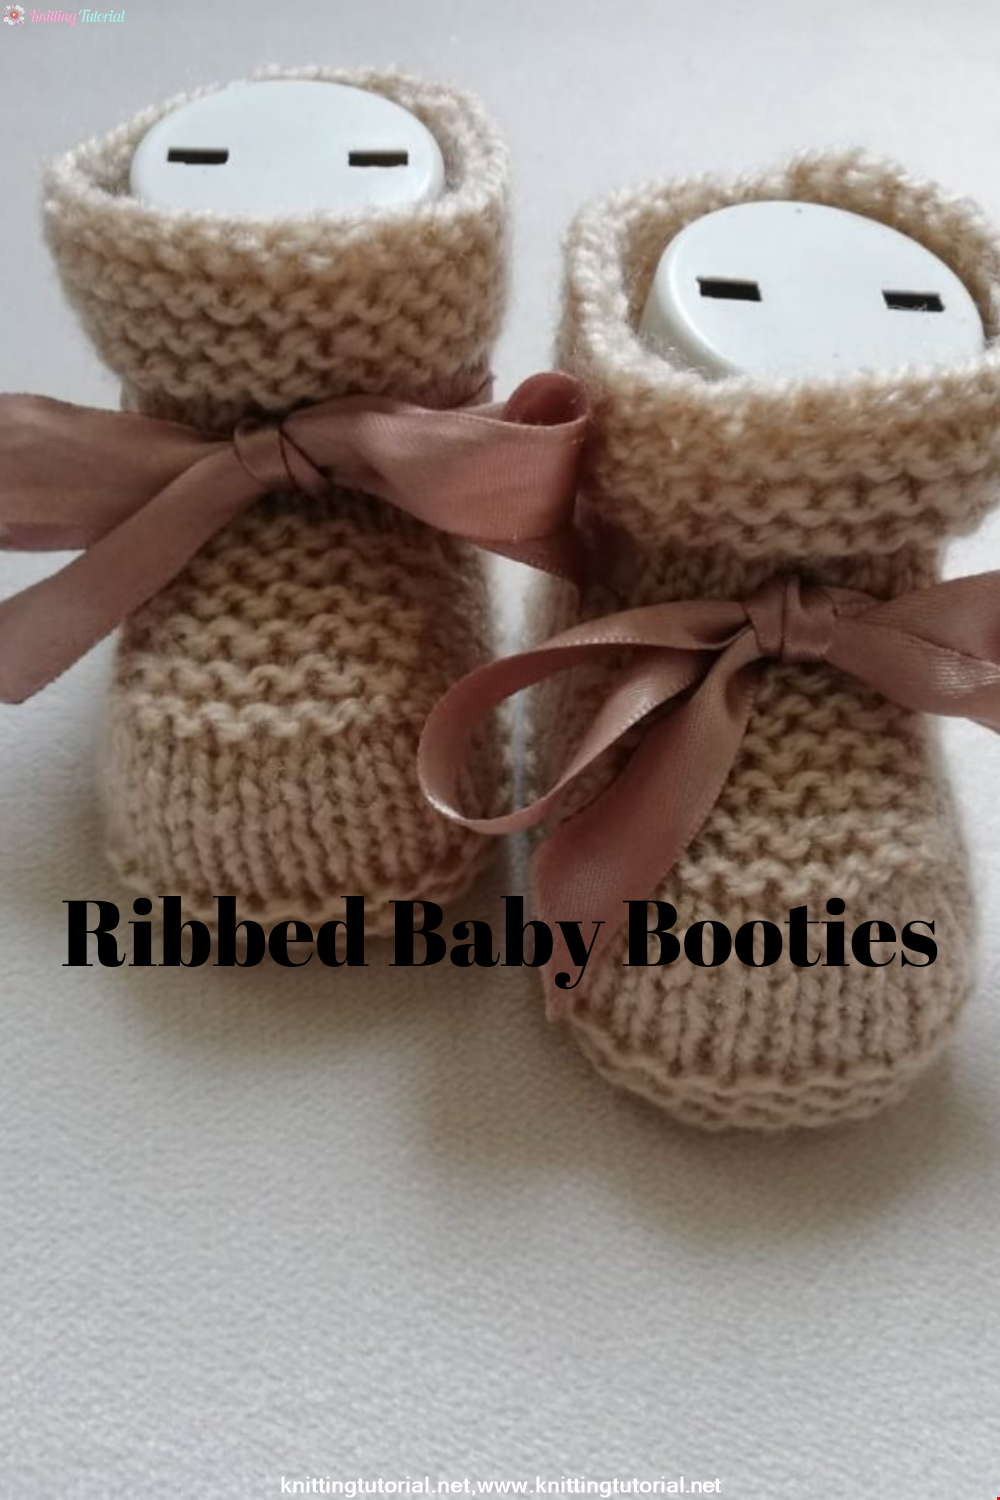 Ribbon Baby Booties Making